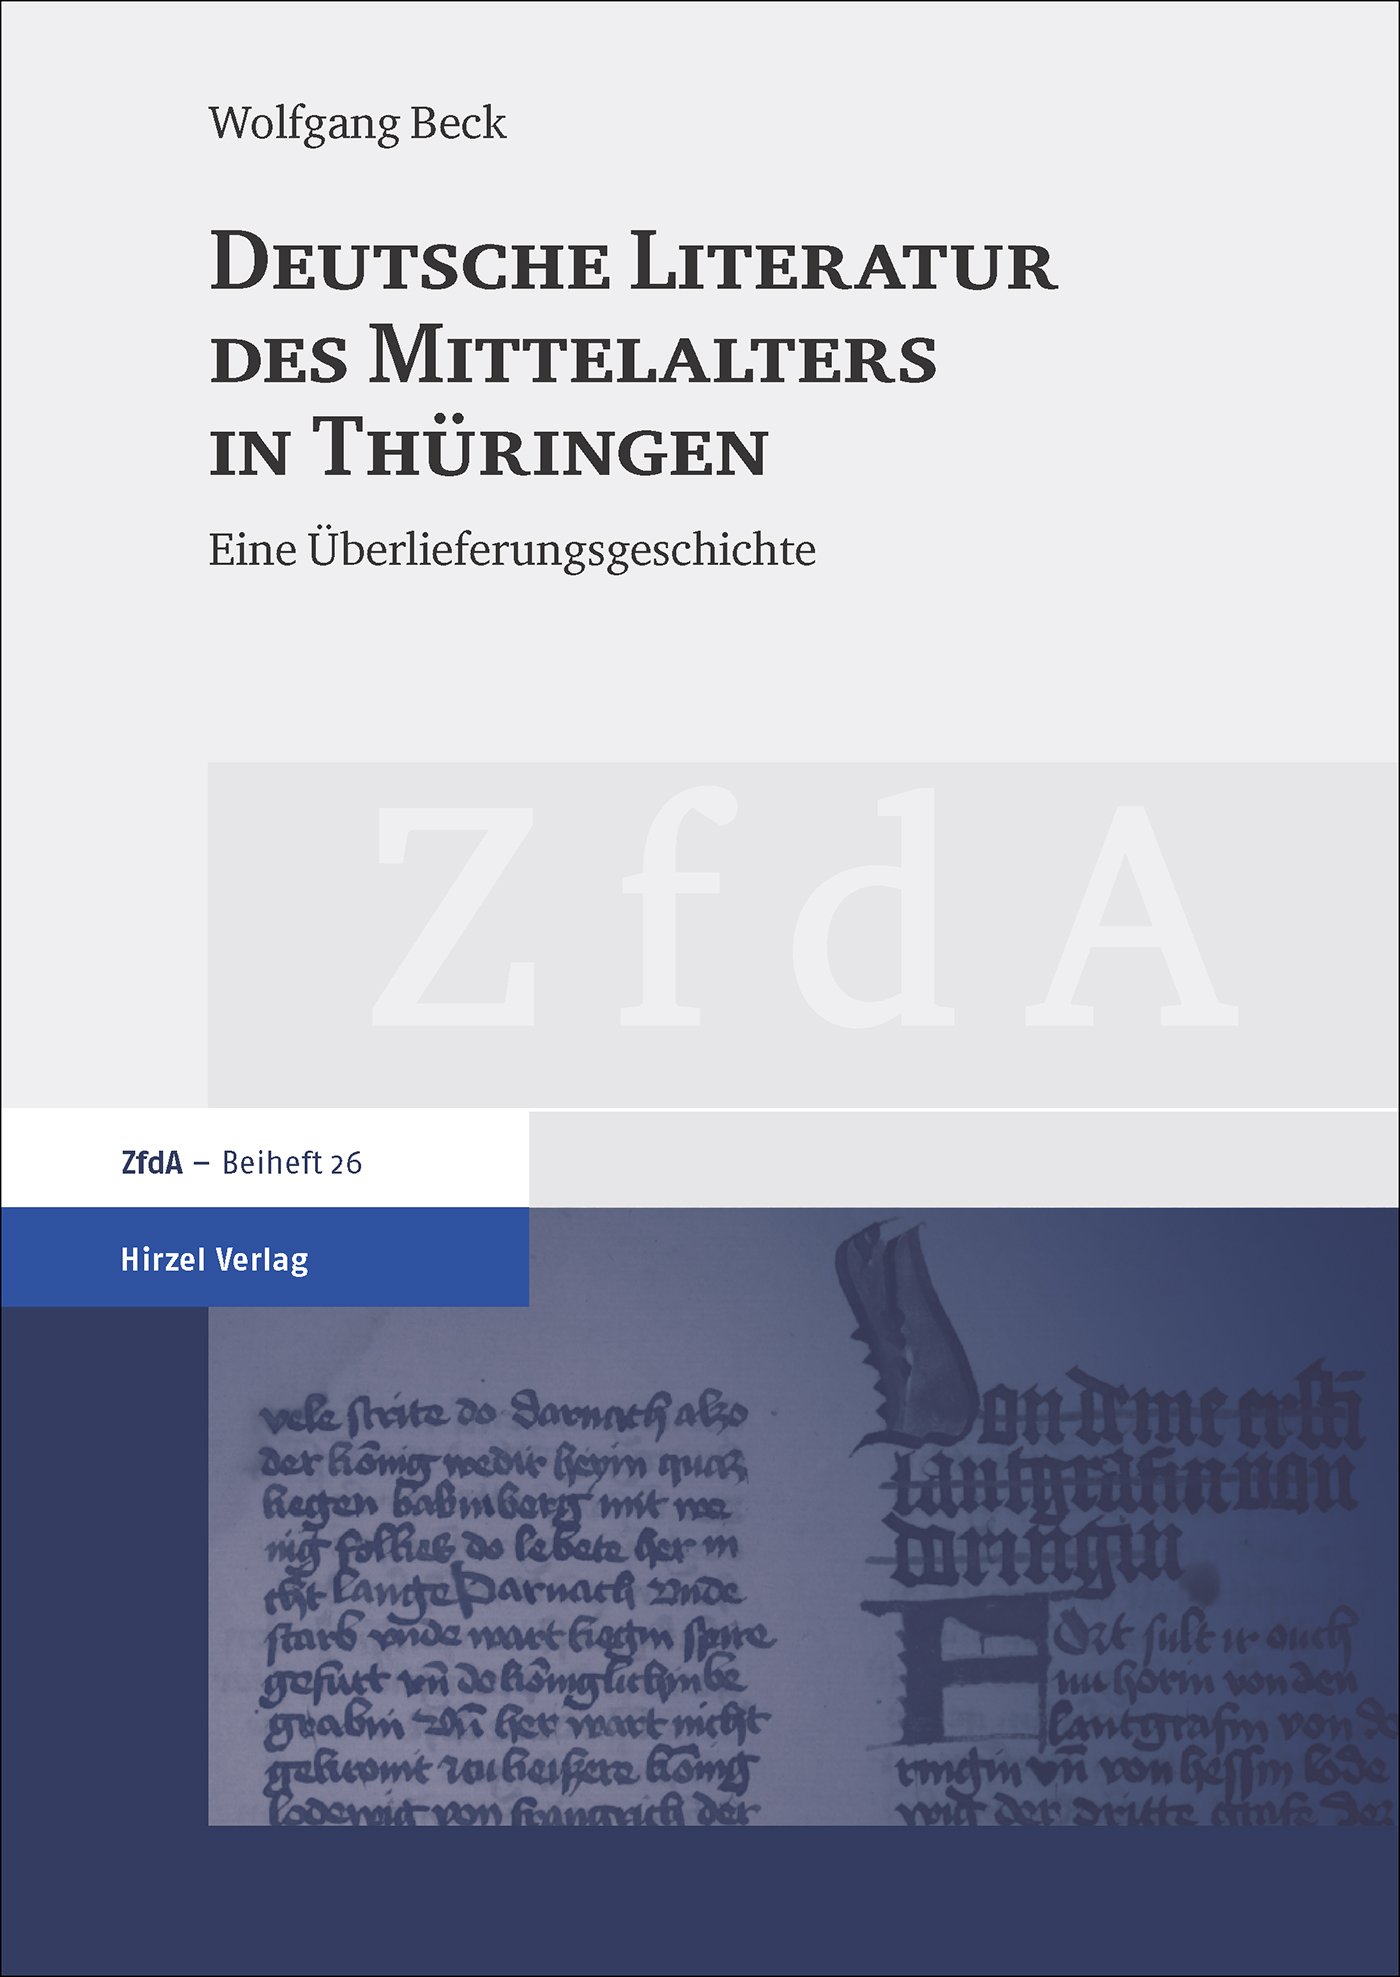 Deutsche Literatur des Mittelalters in Thüringen